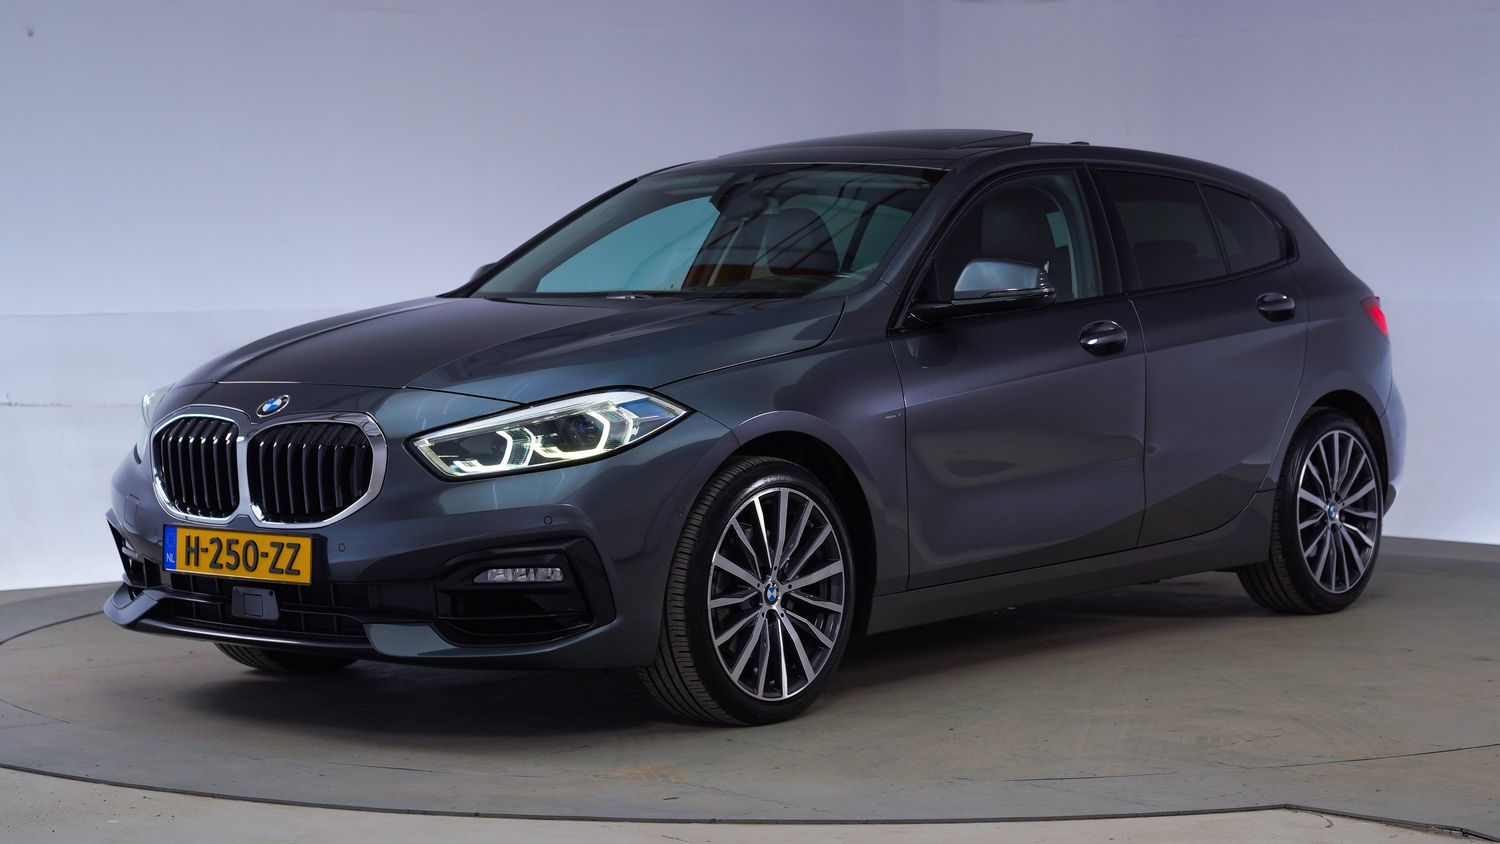 BMW 1-serie Hatchback 2020 H-250-ZZ 1